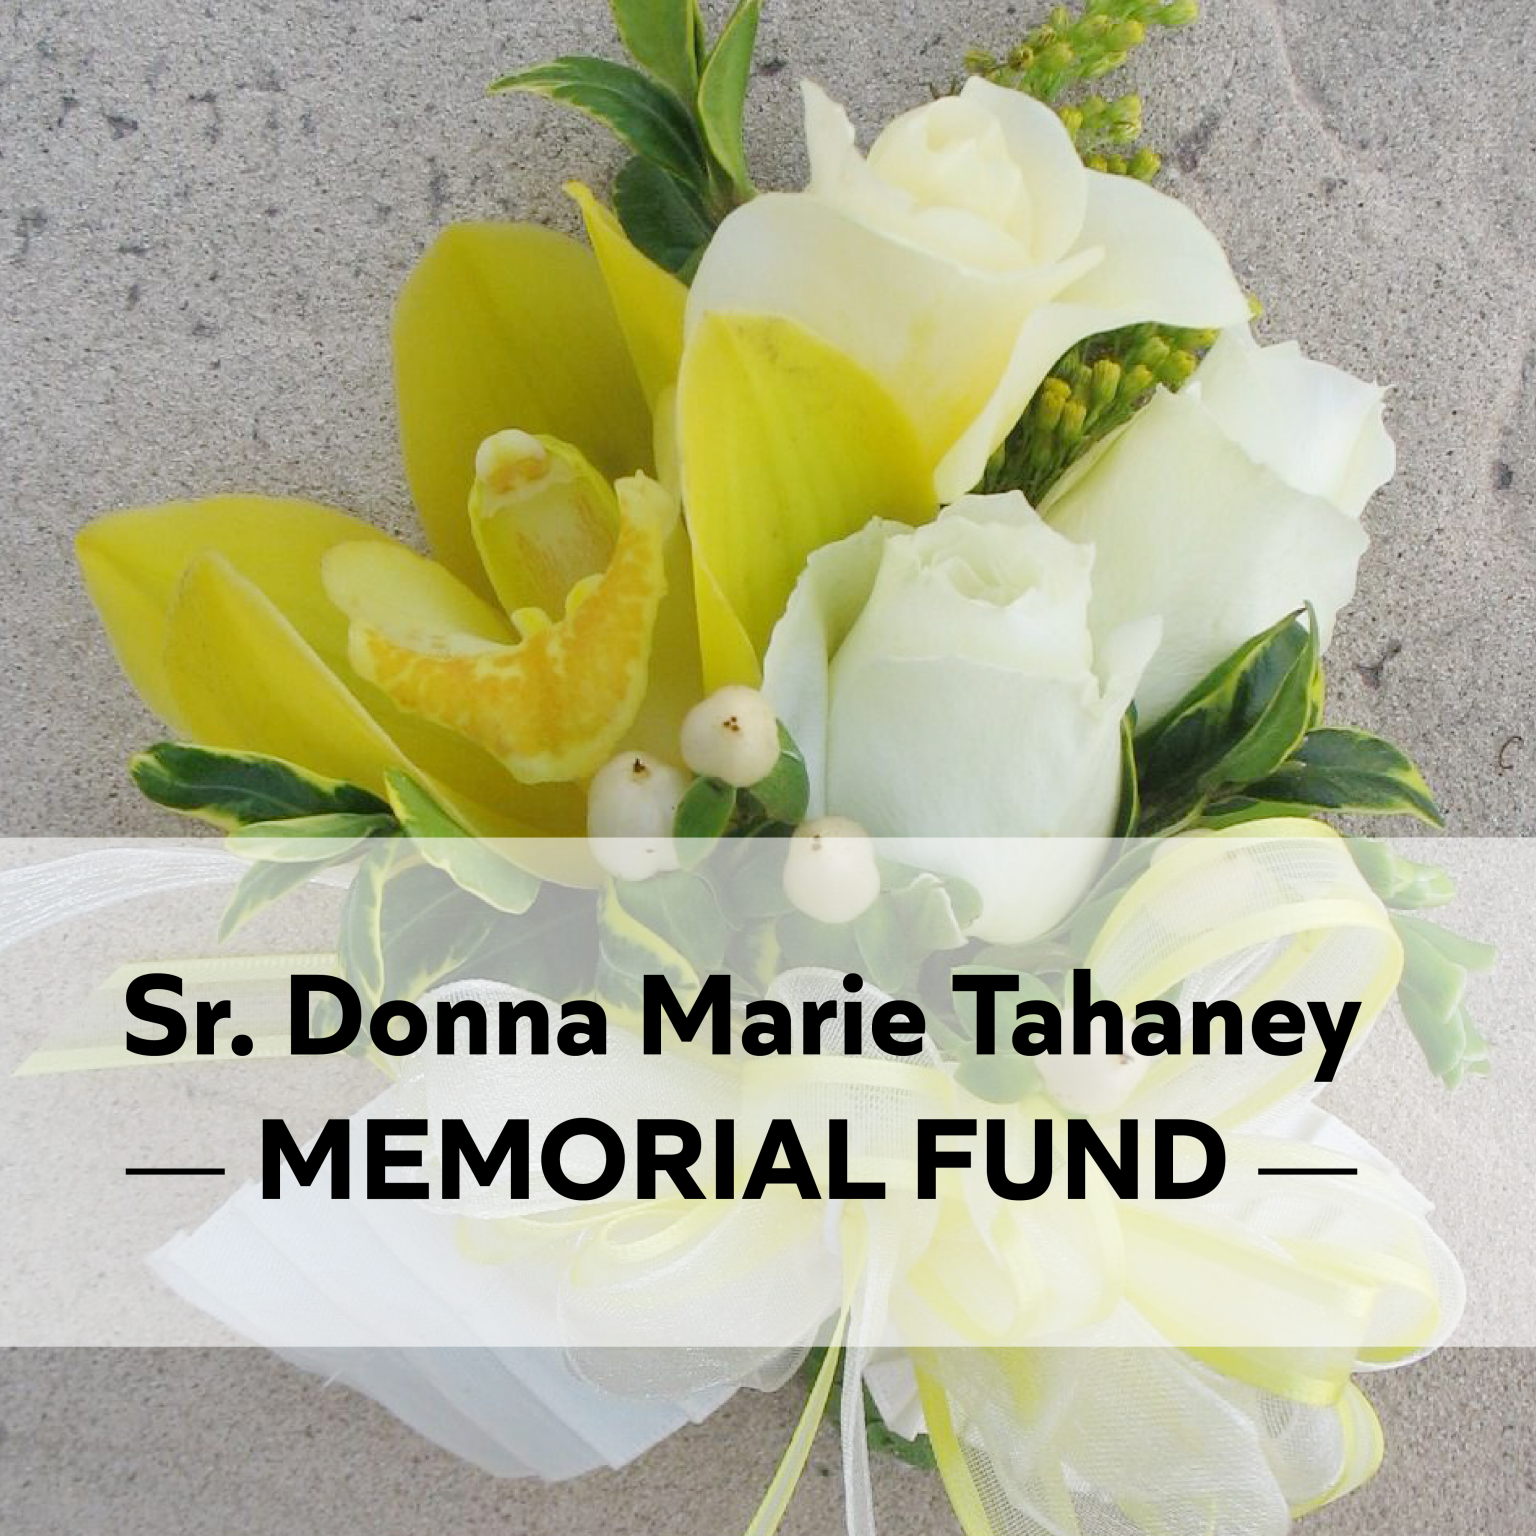 Sr. Donna Marie Memorial Fund